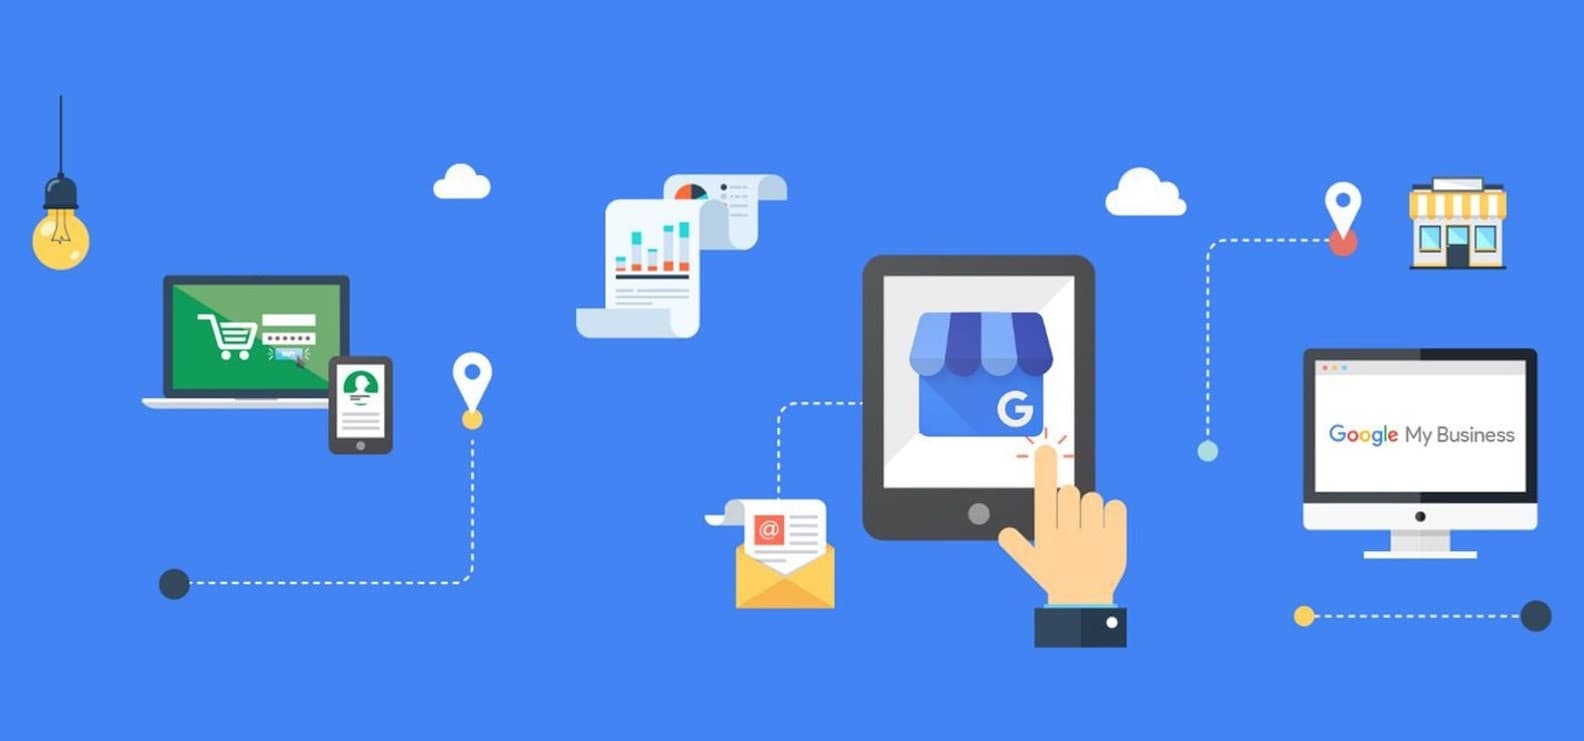 Google My Business nedir, Google My Business hesabı nasıl açılır?